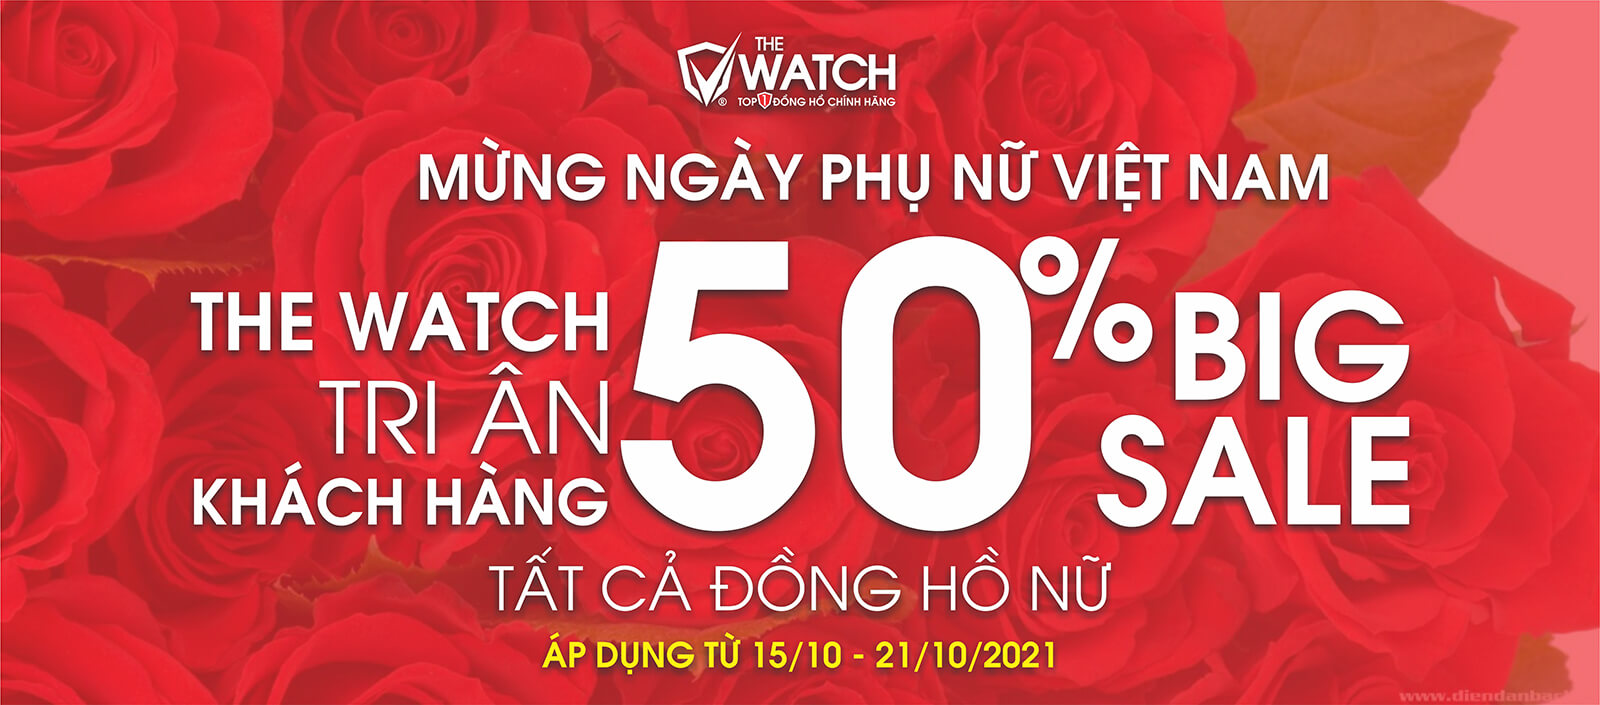 Big Sale 50% nhân ngày phụ nữ việt nam 20-10 đồng hồ the watch